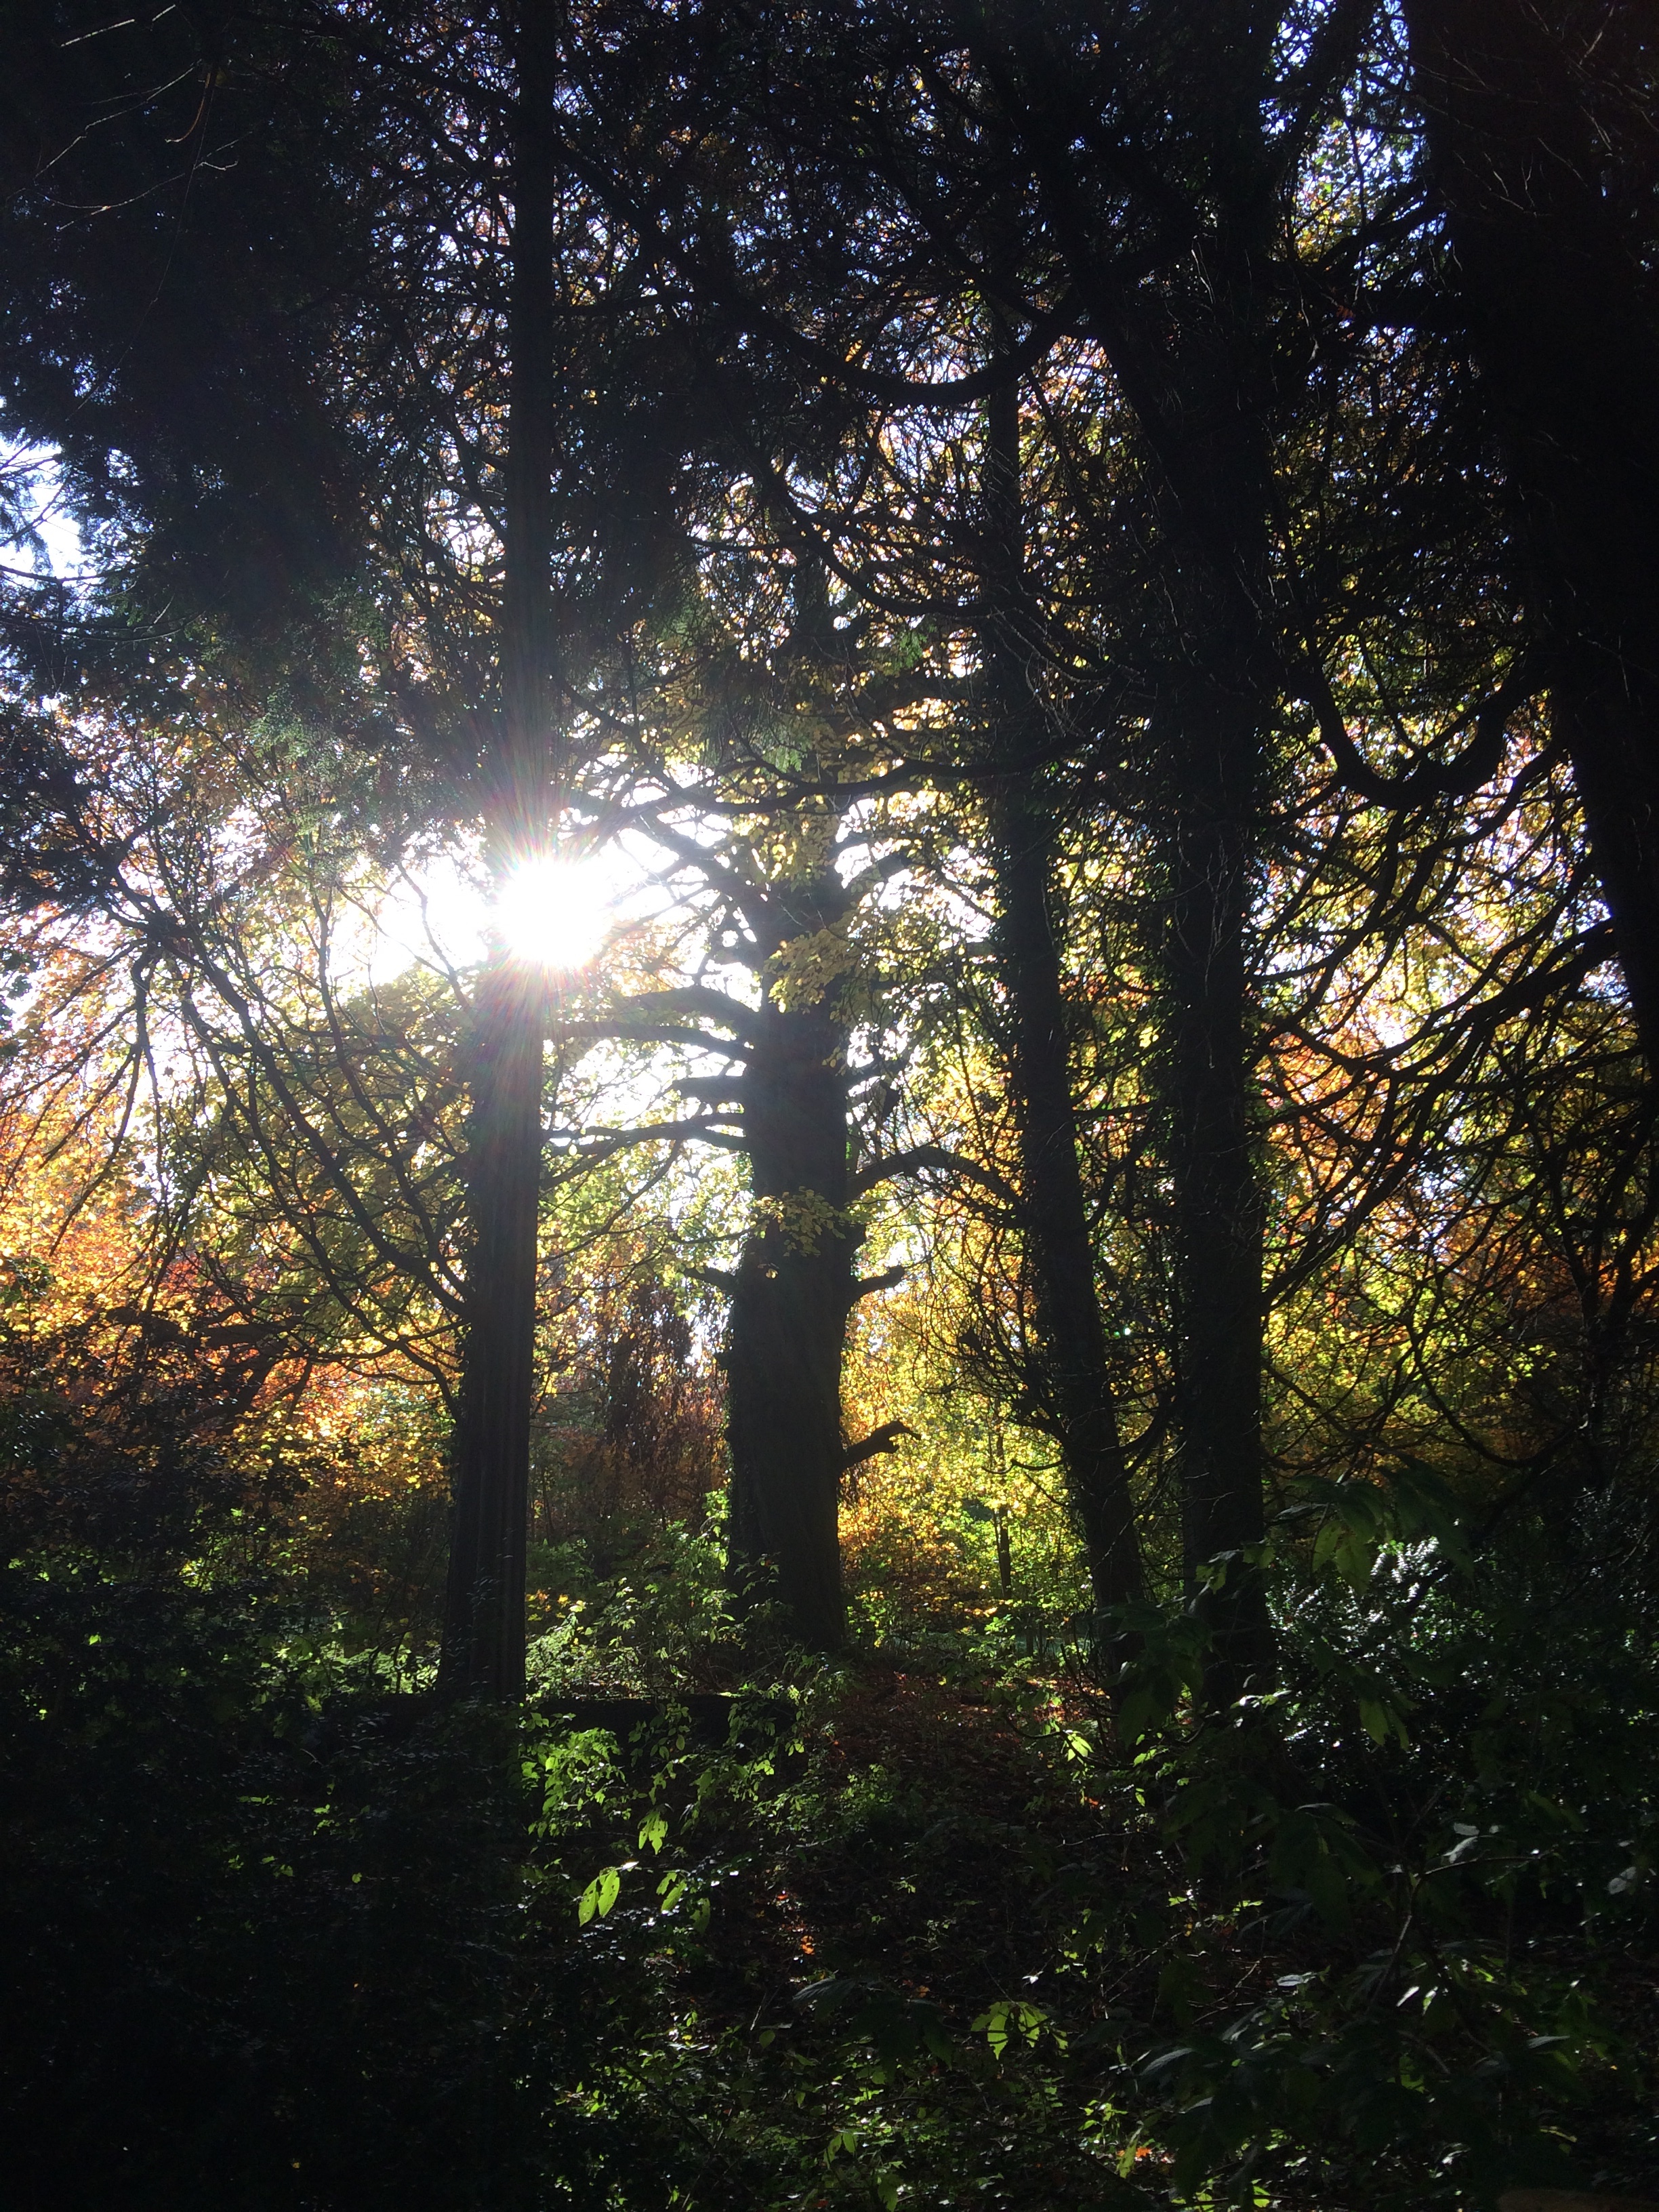 Sunlight filtering through Autumn trees